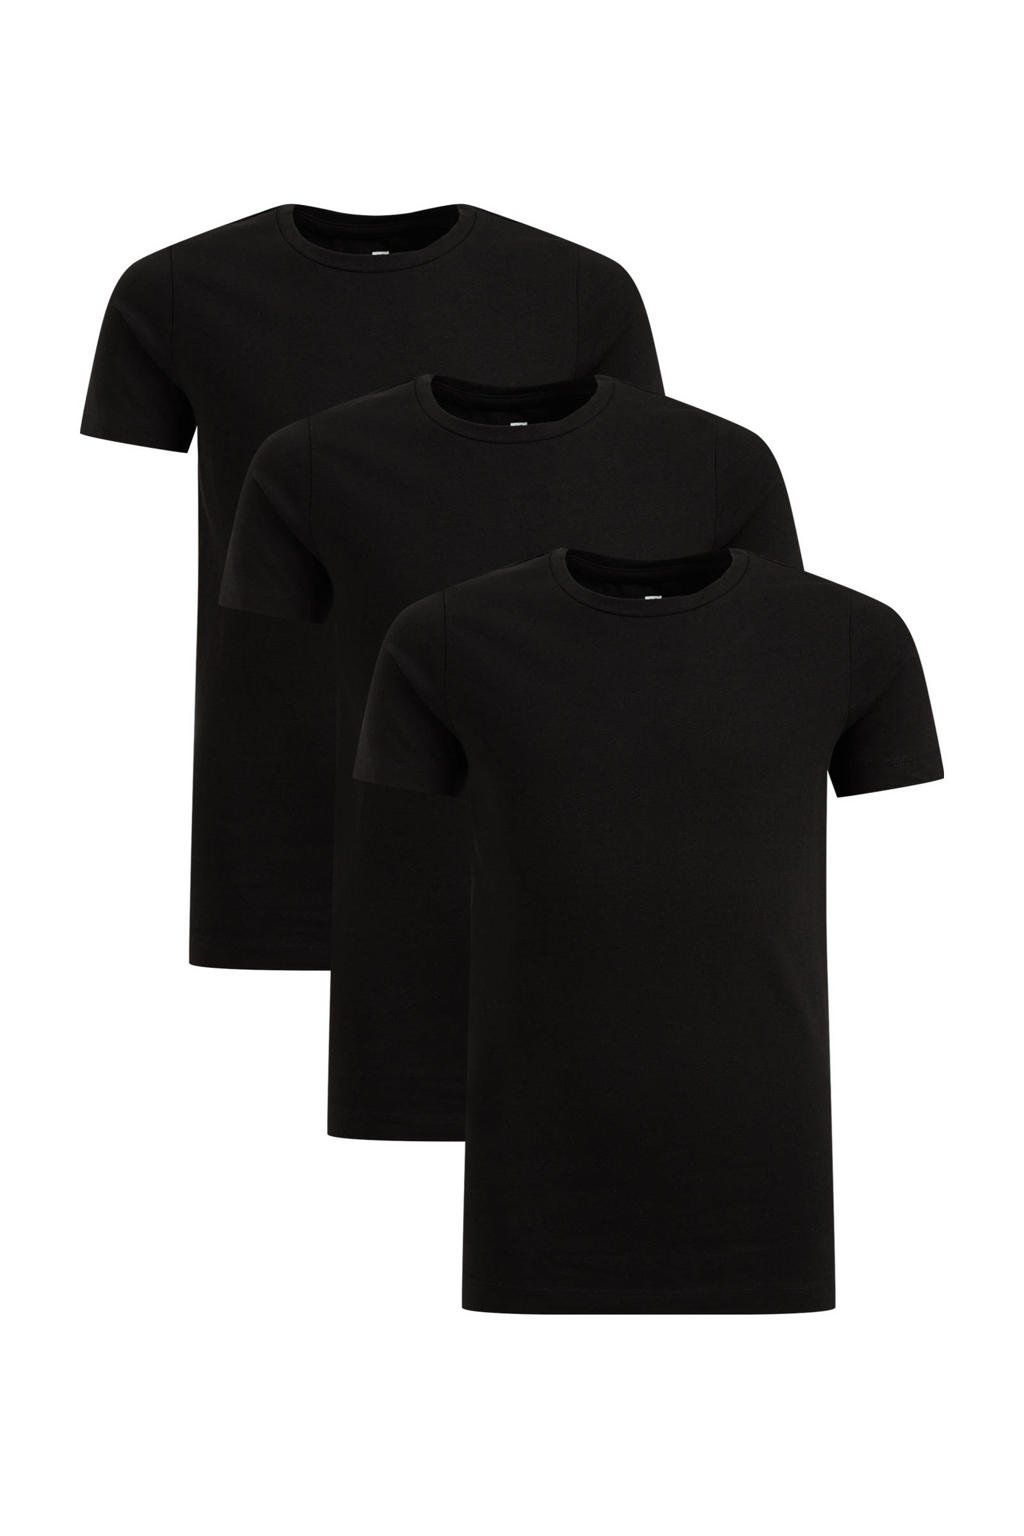 Set van 3 zwarte jongens WE Fashion T-shirt van stretchkatoen met korte mouwen en ronde hals